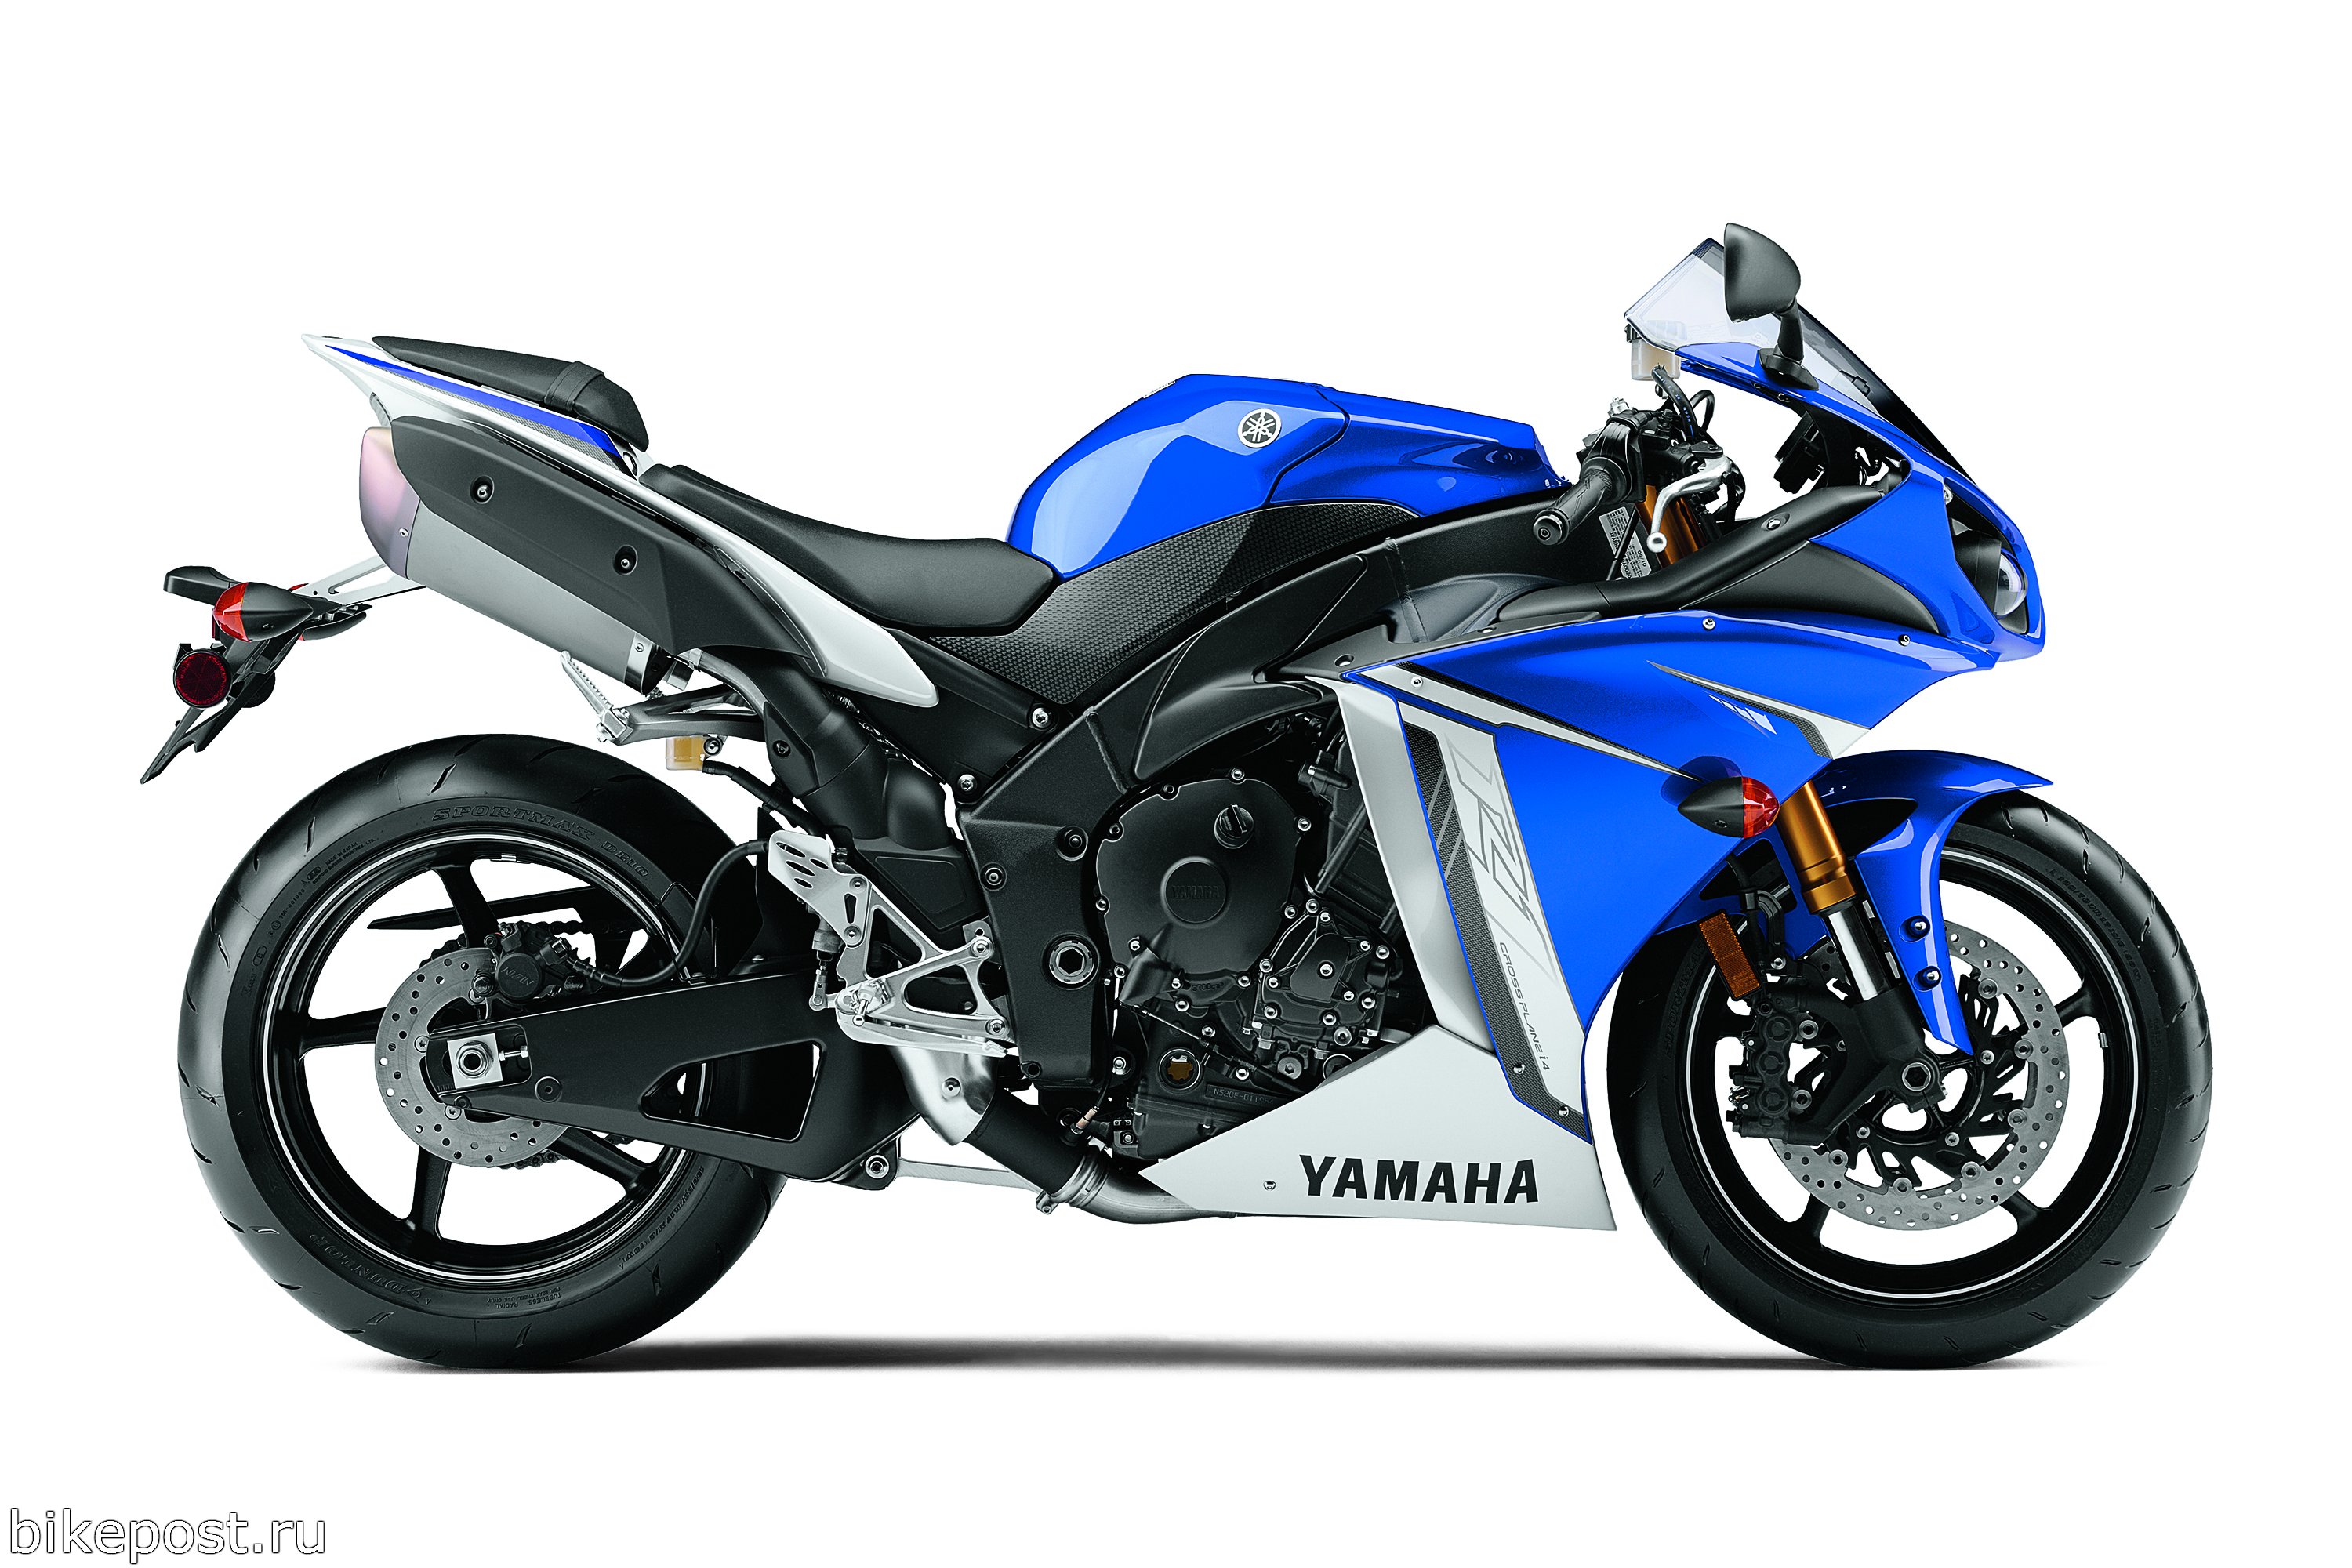 Yamaha R1 — самый популярный спортбайк в мире!